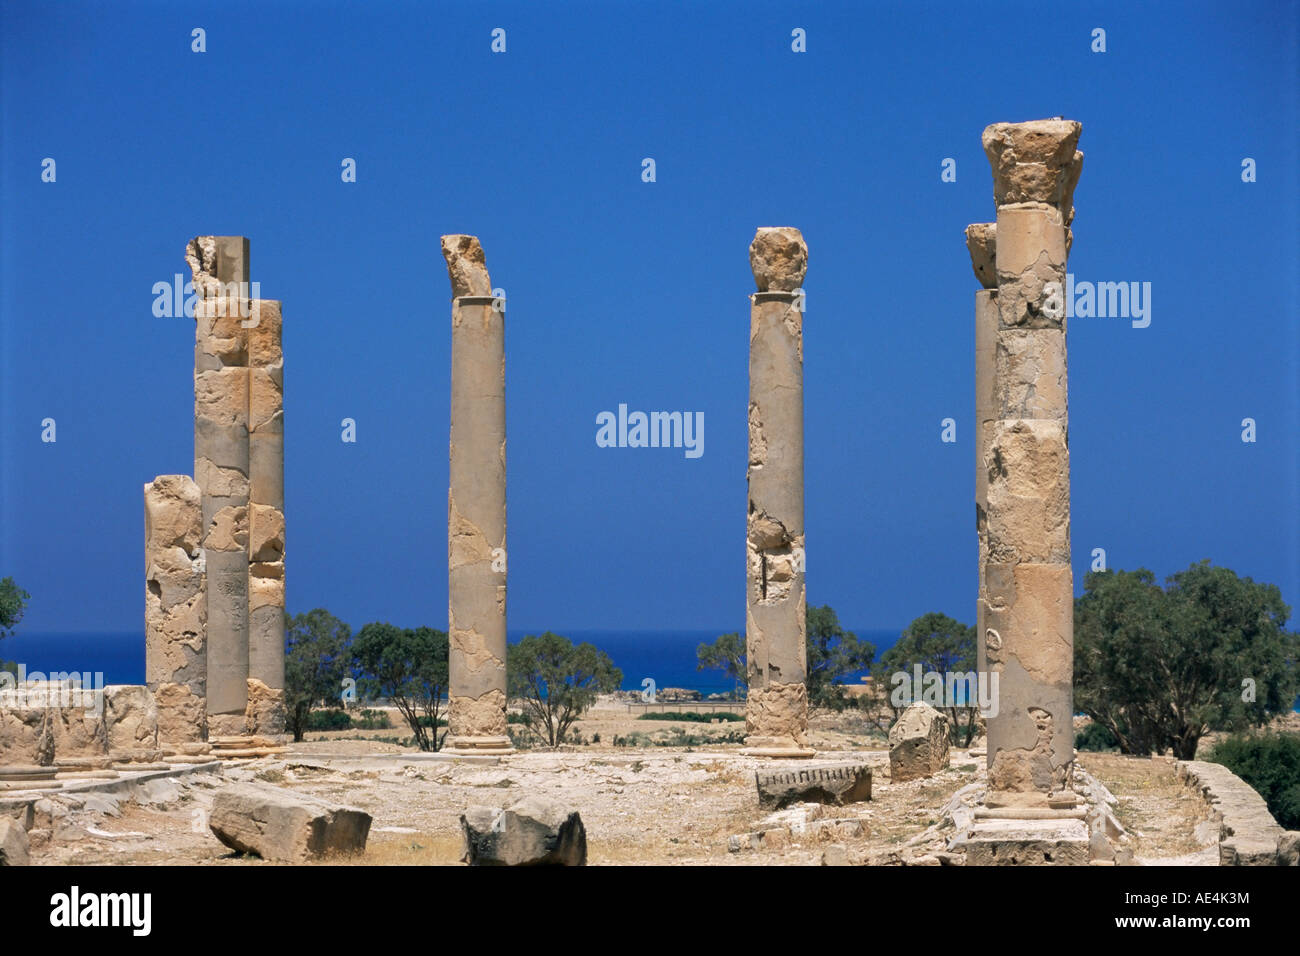 Les colonnes du palais, Tolemaide (Ptolémaïs), la Cyrénaïque, Libye, Afrique du Nord, Afrique Banque D'Images